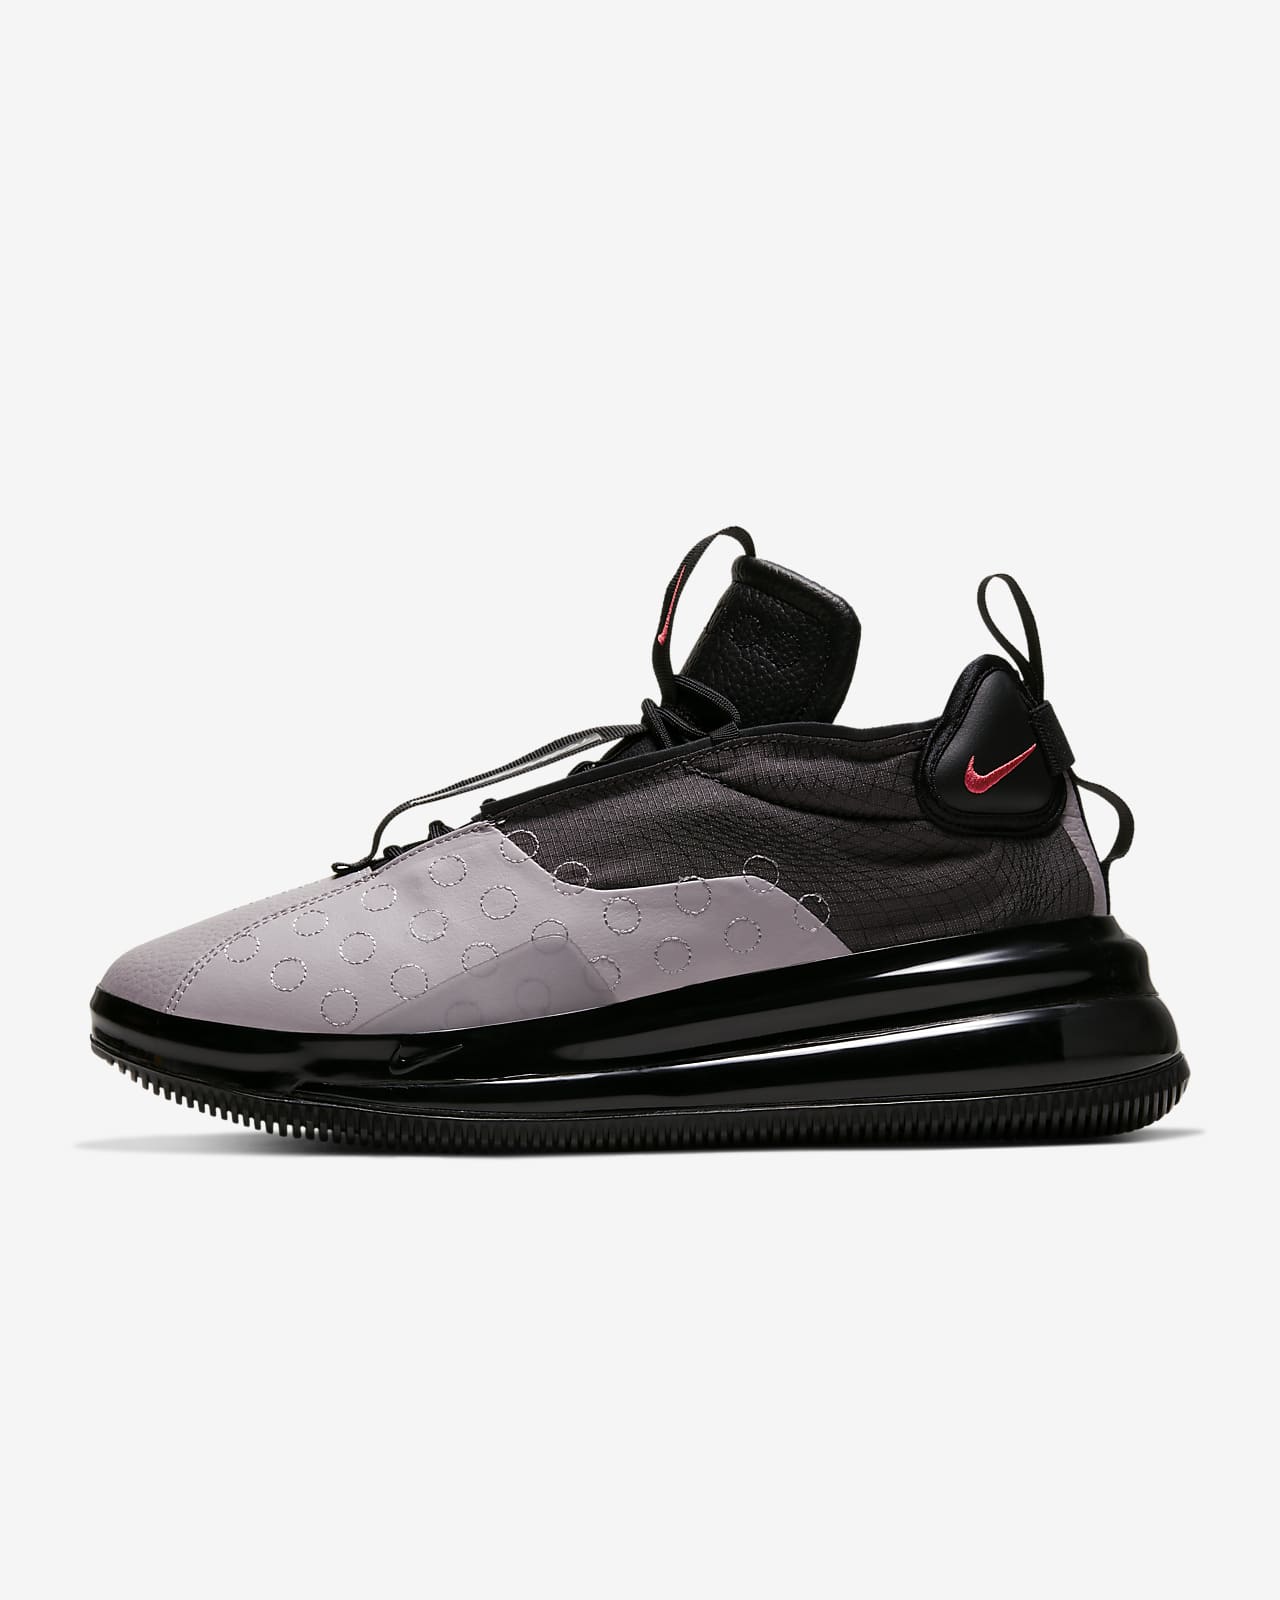 Nike Air Max 720 Waves 男子运动鞋